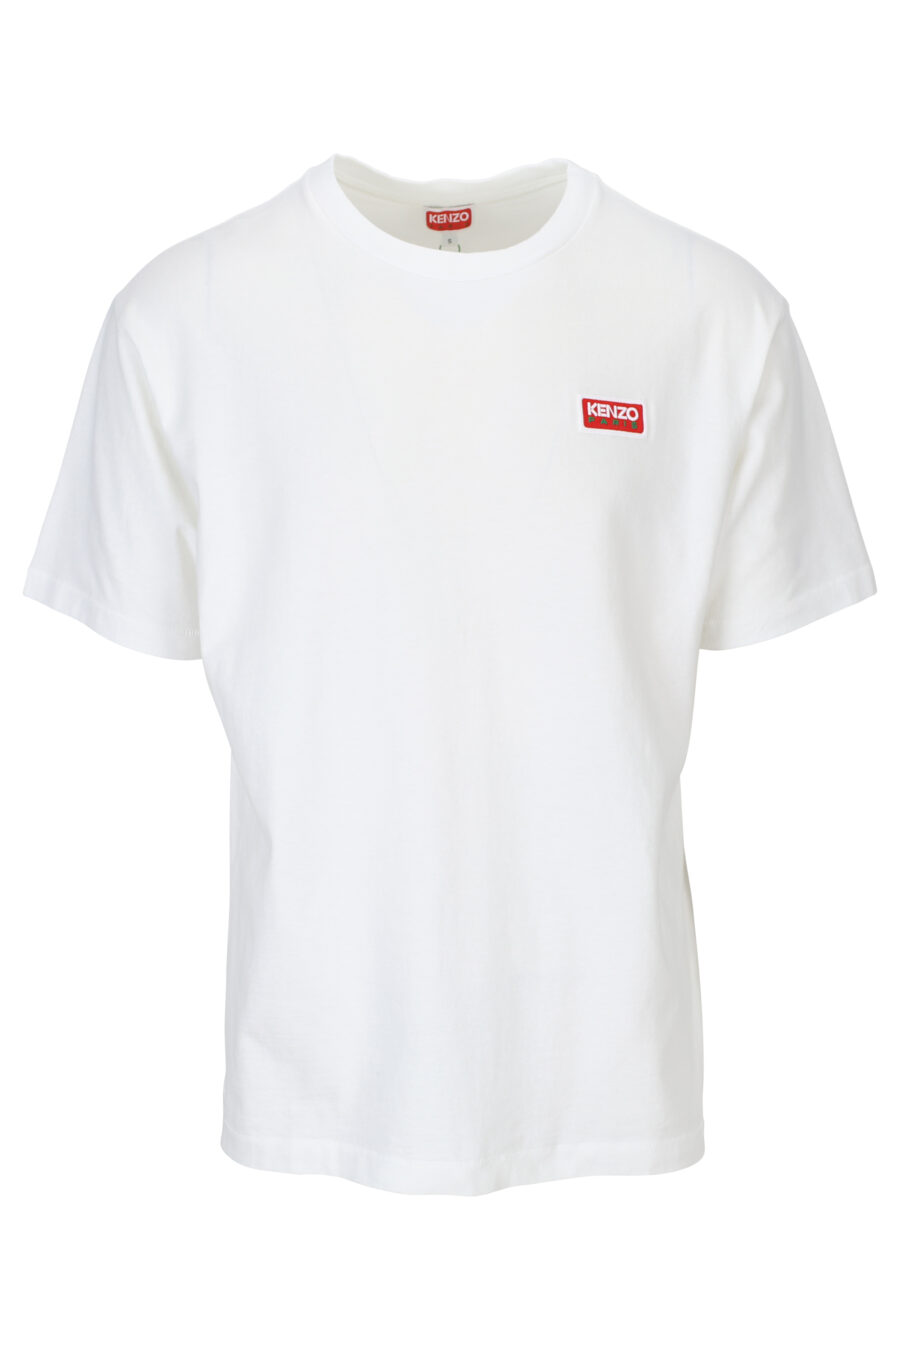 Weißes T-Shirt mit "kenzo paris" Maxilogo auf dem Rücken - 3612230543140